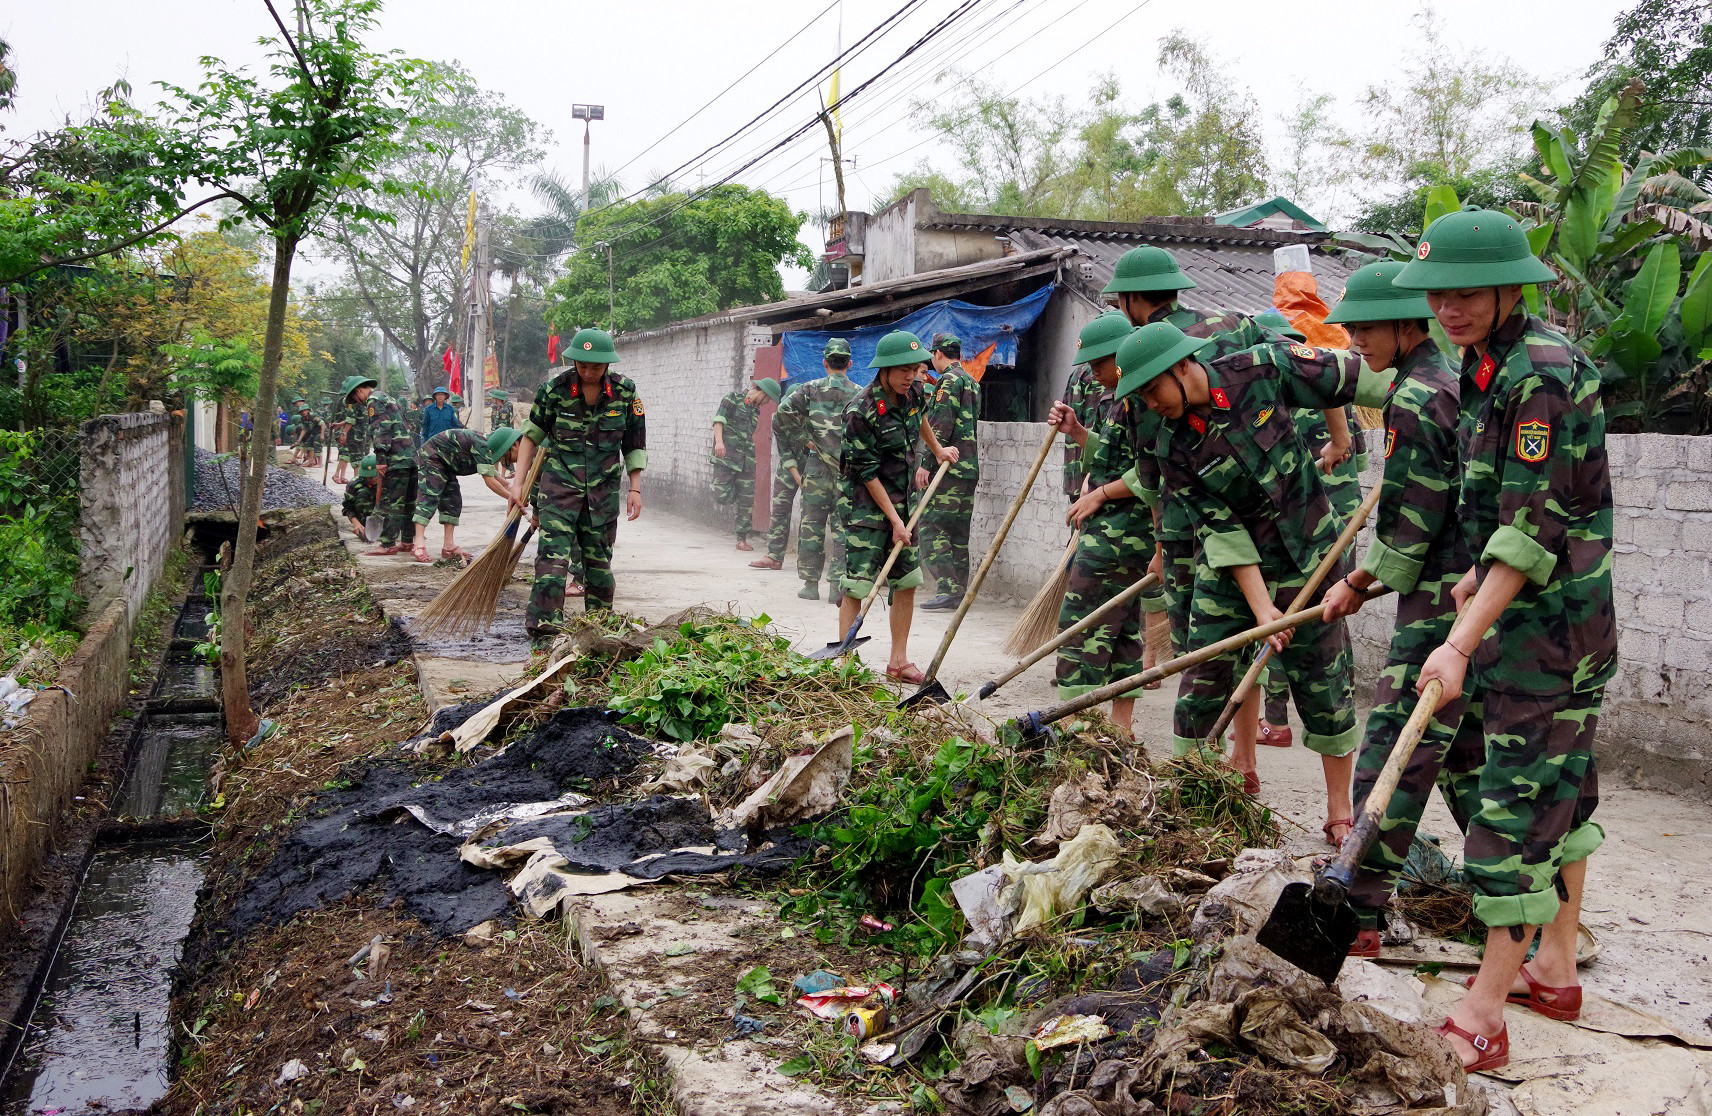 bna_Các đoàn viên, chiến sỹ đang nạo vét hệ thống kênh mương trong khu dân cư xóm 9 xã Nghi Kim, ảnh Phong Quang